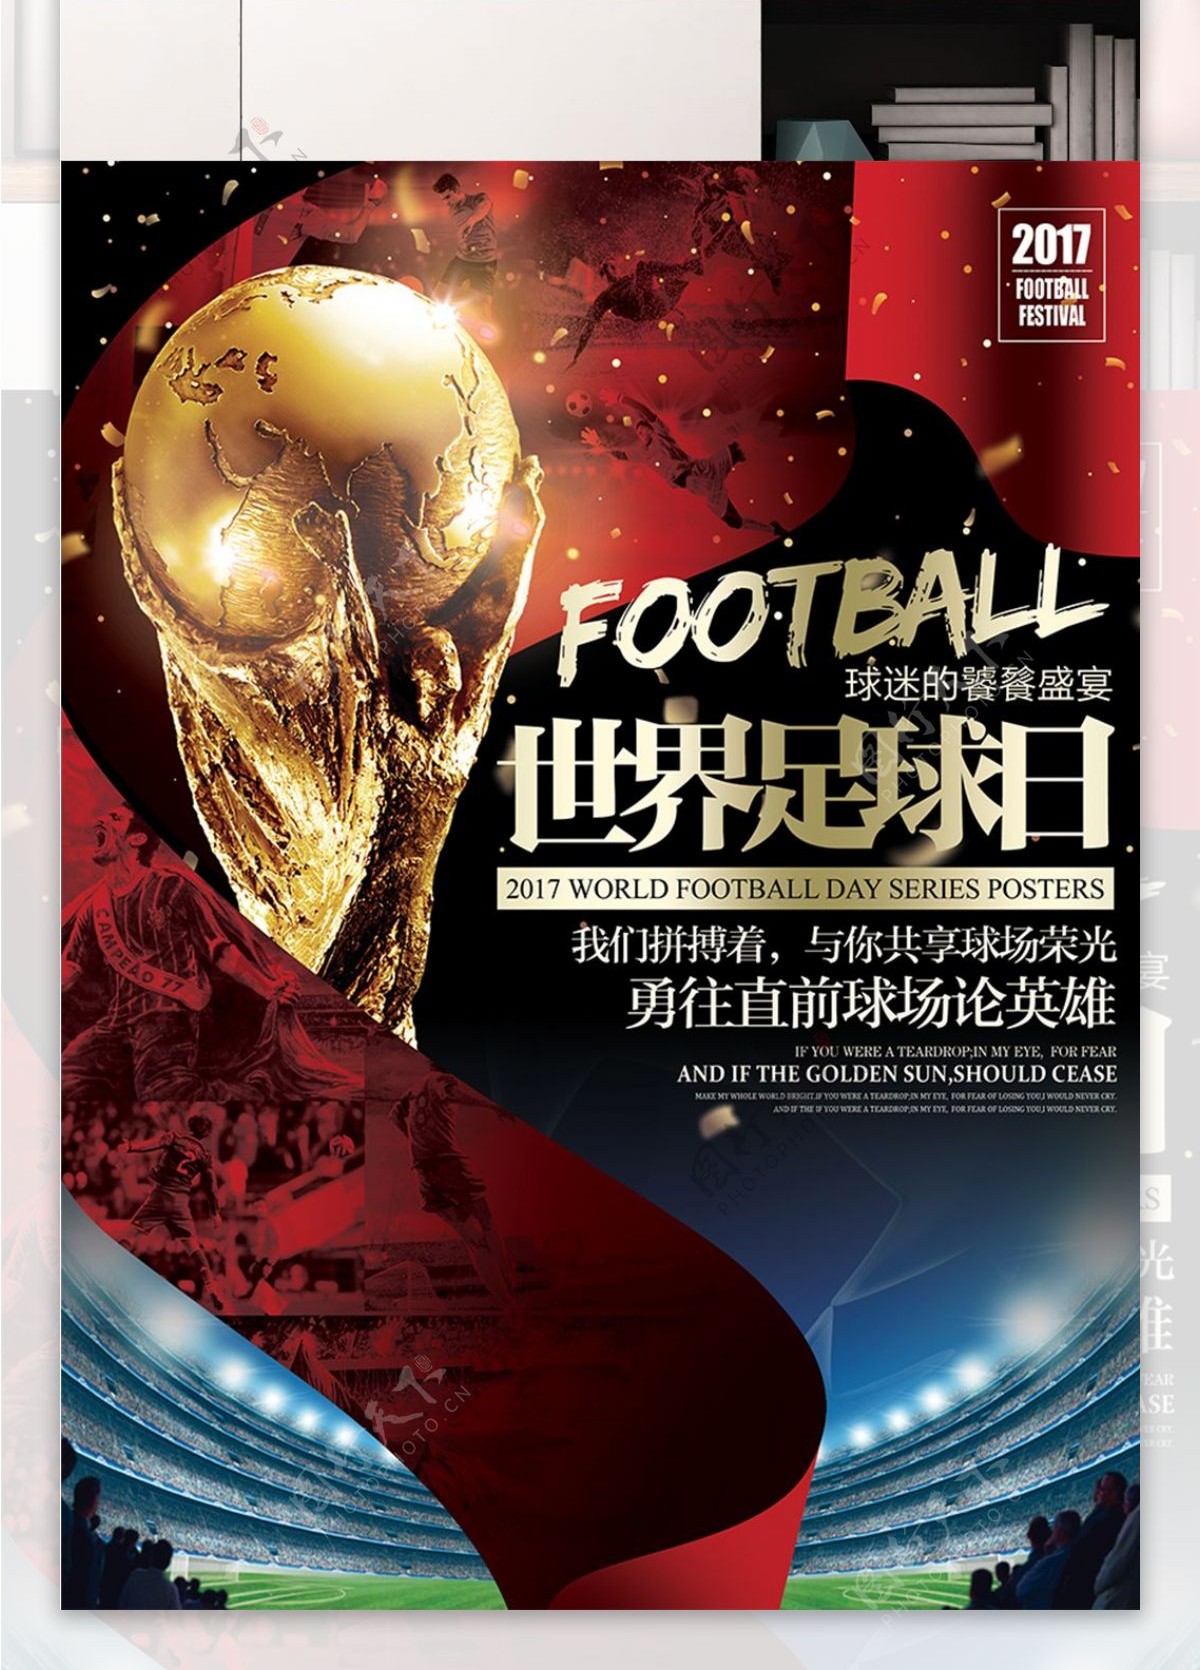 酷炫世界足球日比赛球赛主题宣传海报展板